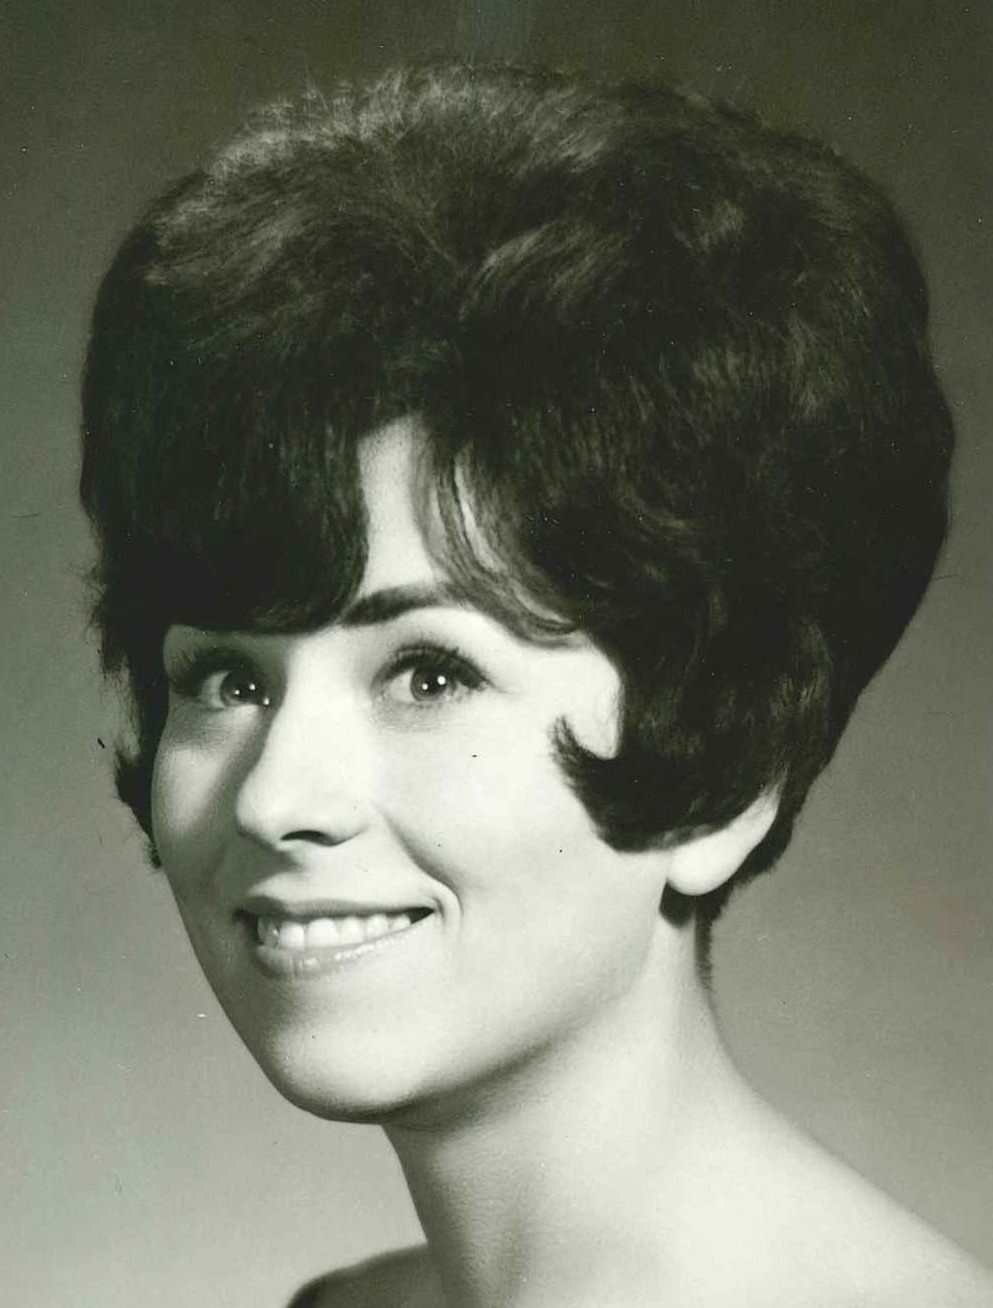 Barbara Terry